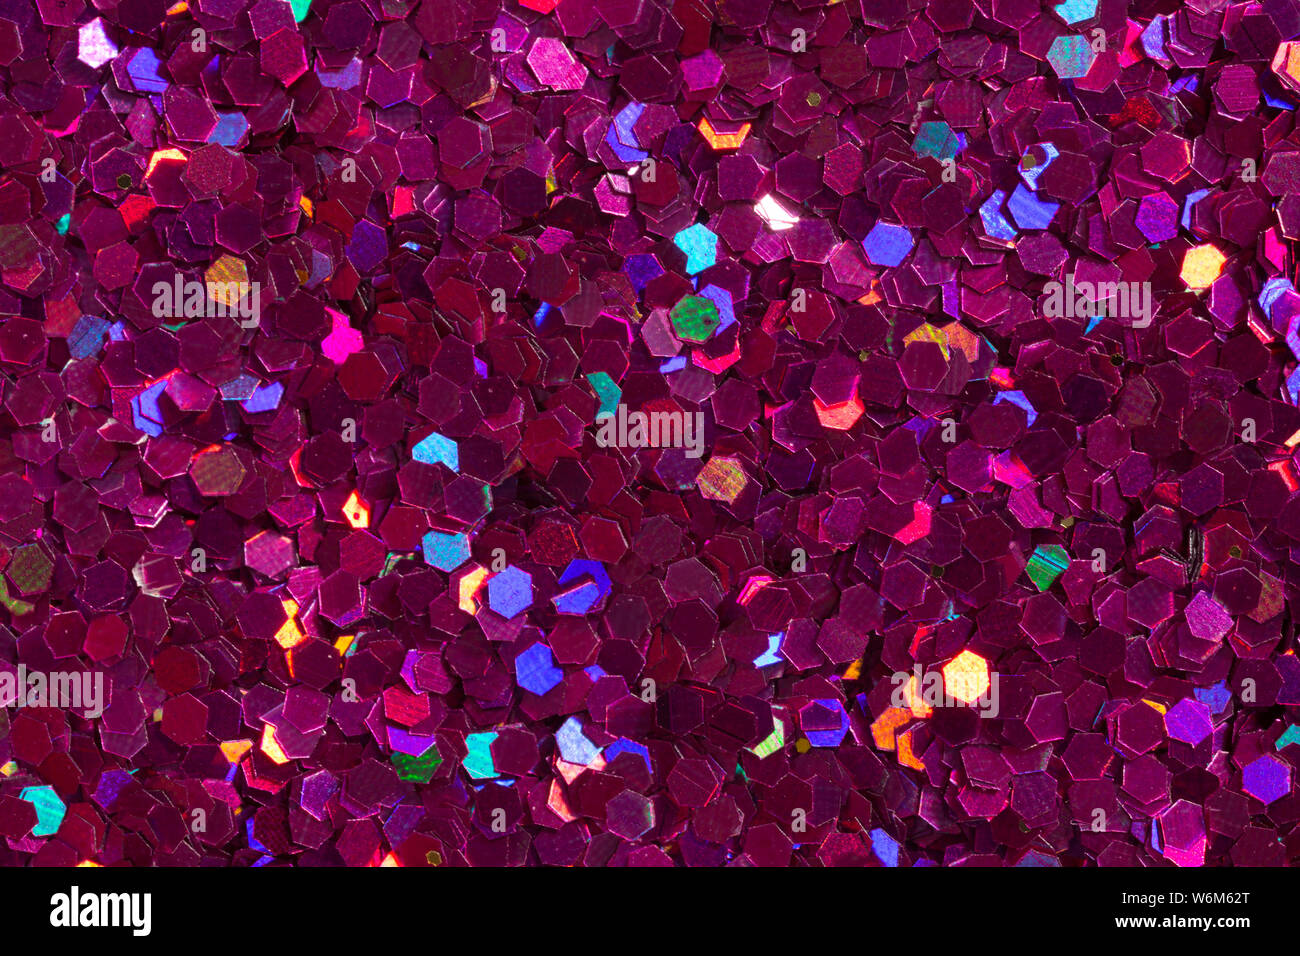 Confetti viola e texture glitter su sfondo nero